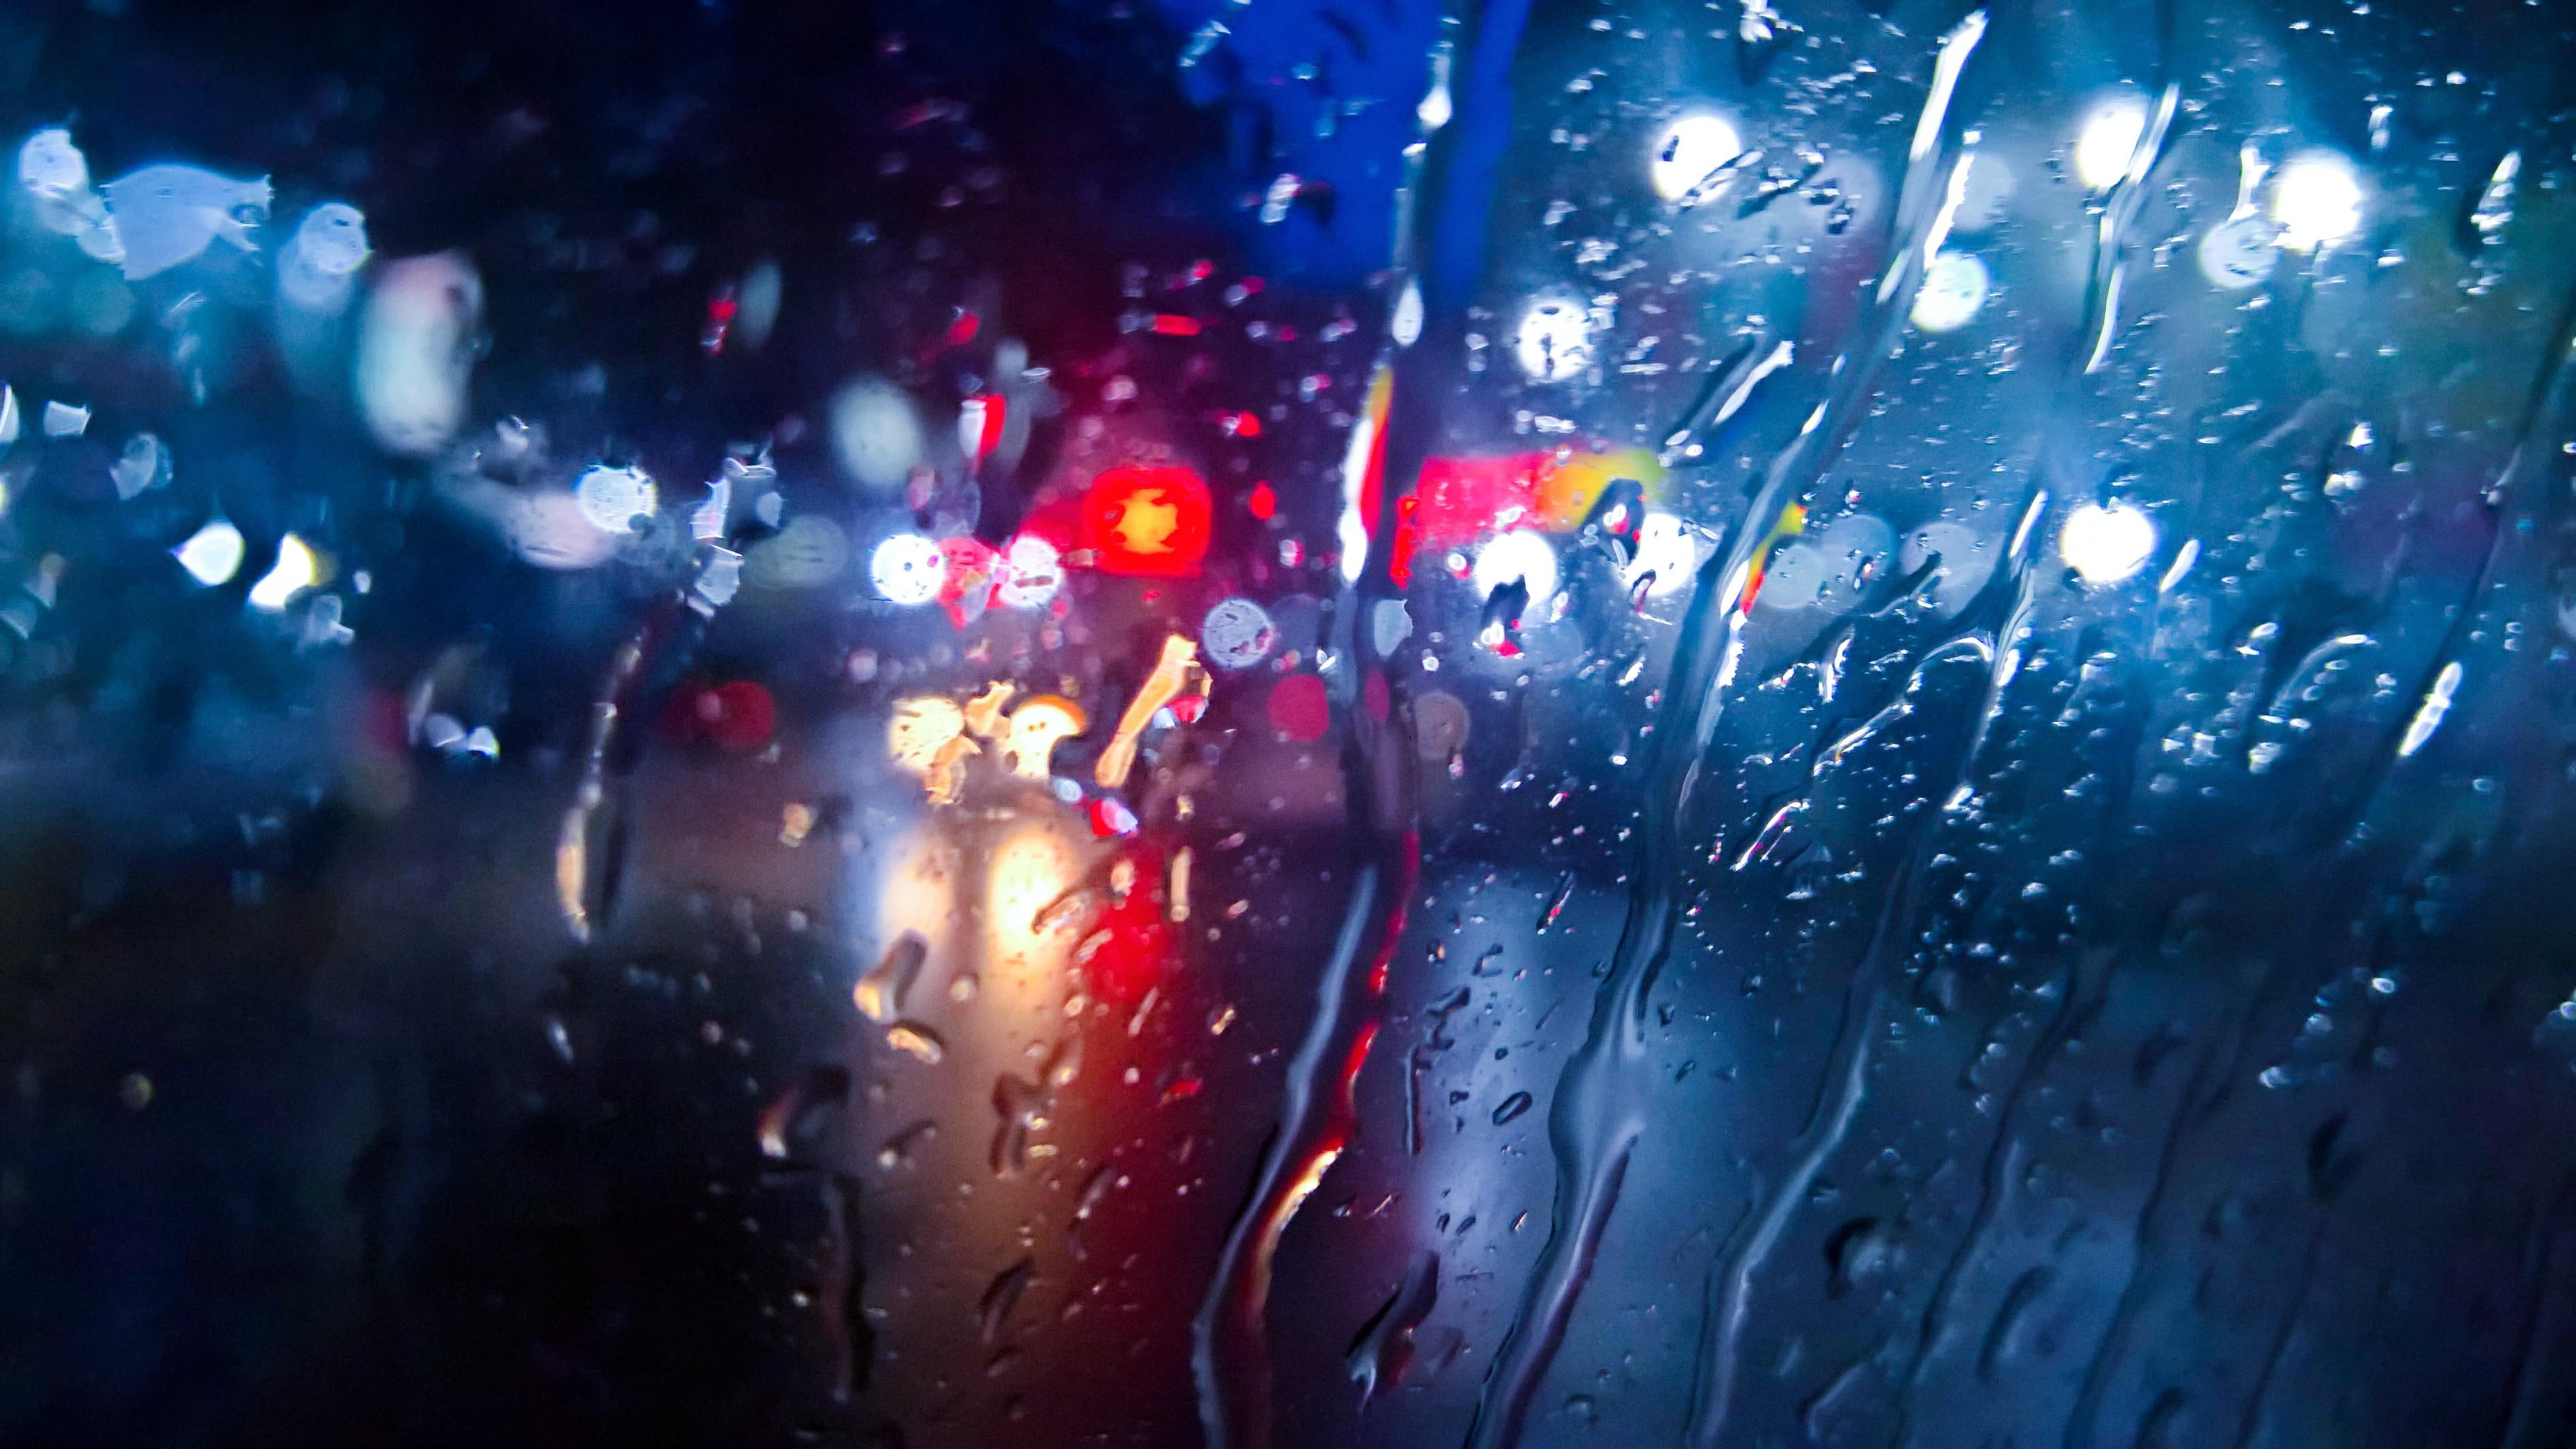 rainy, night, road, traffics, lights, glass, drops